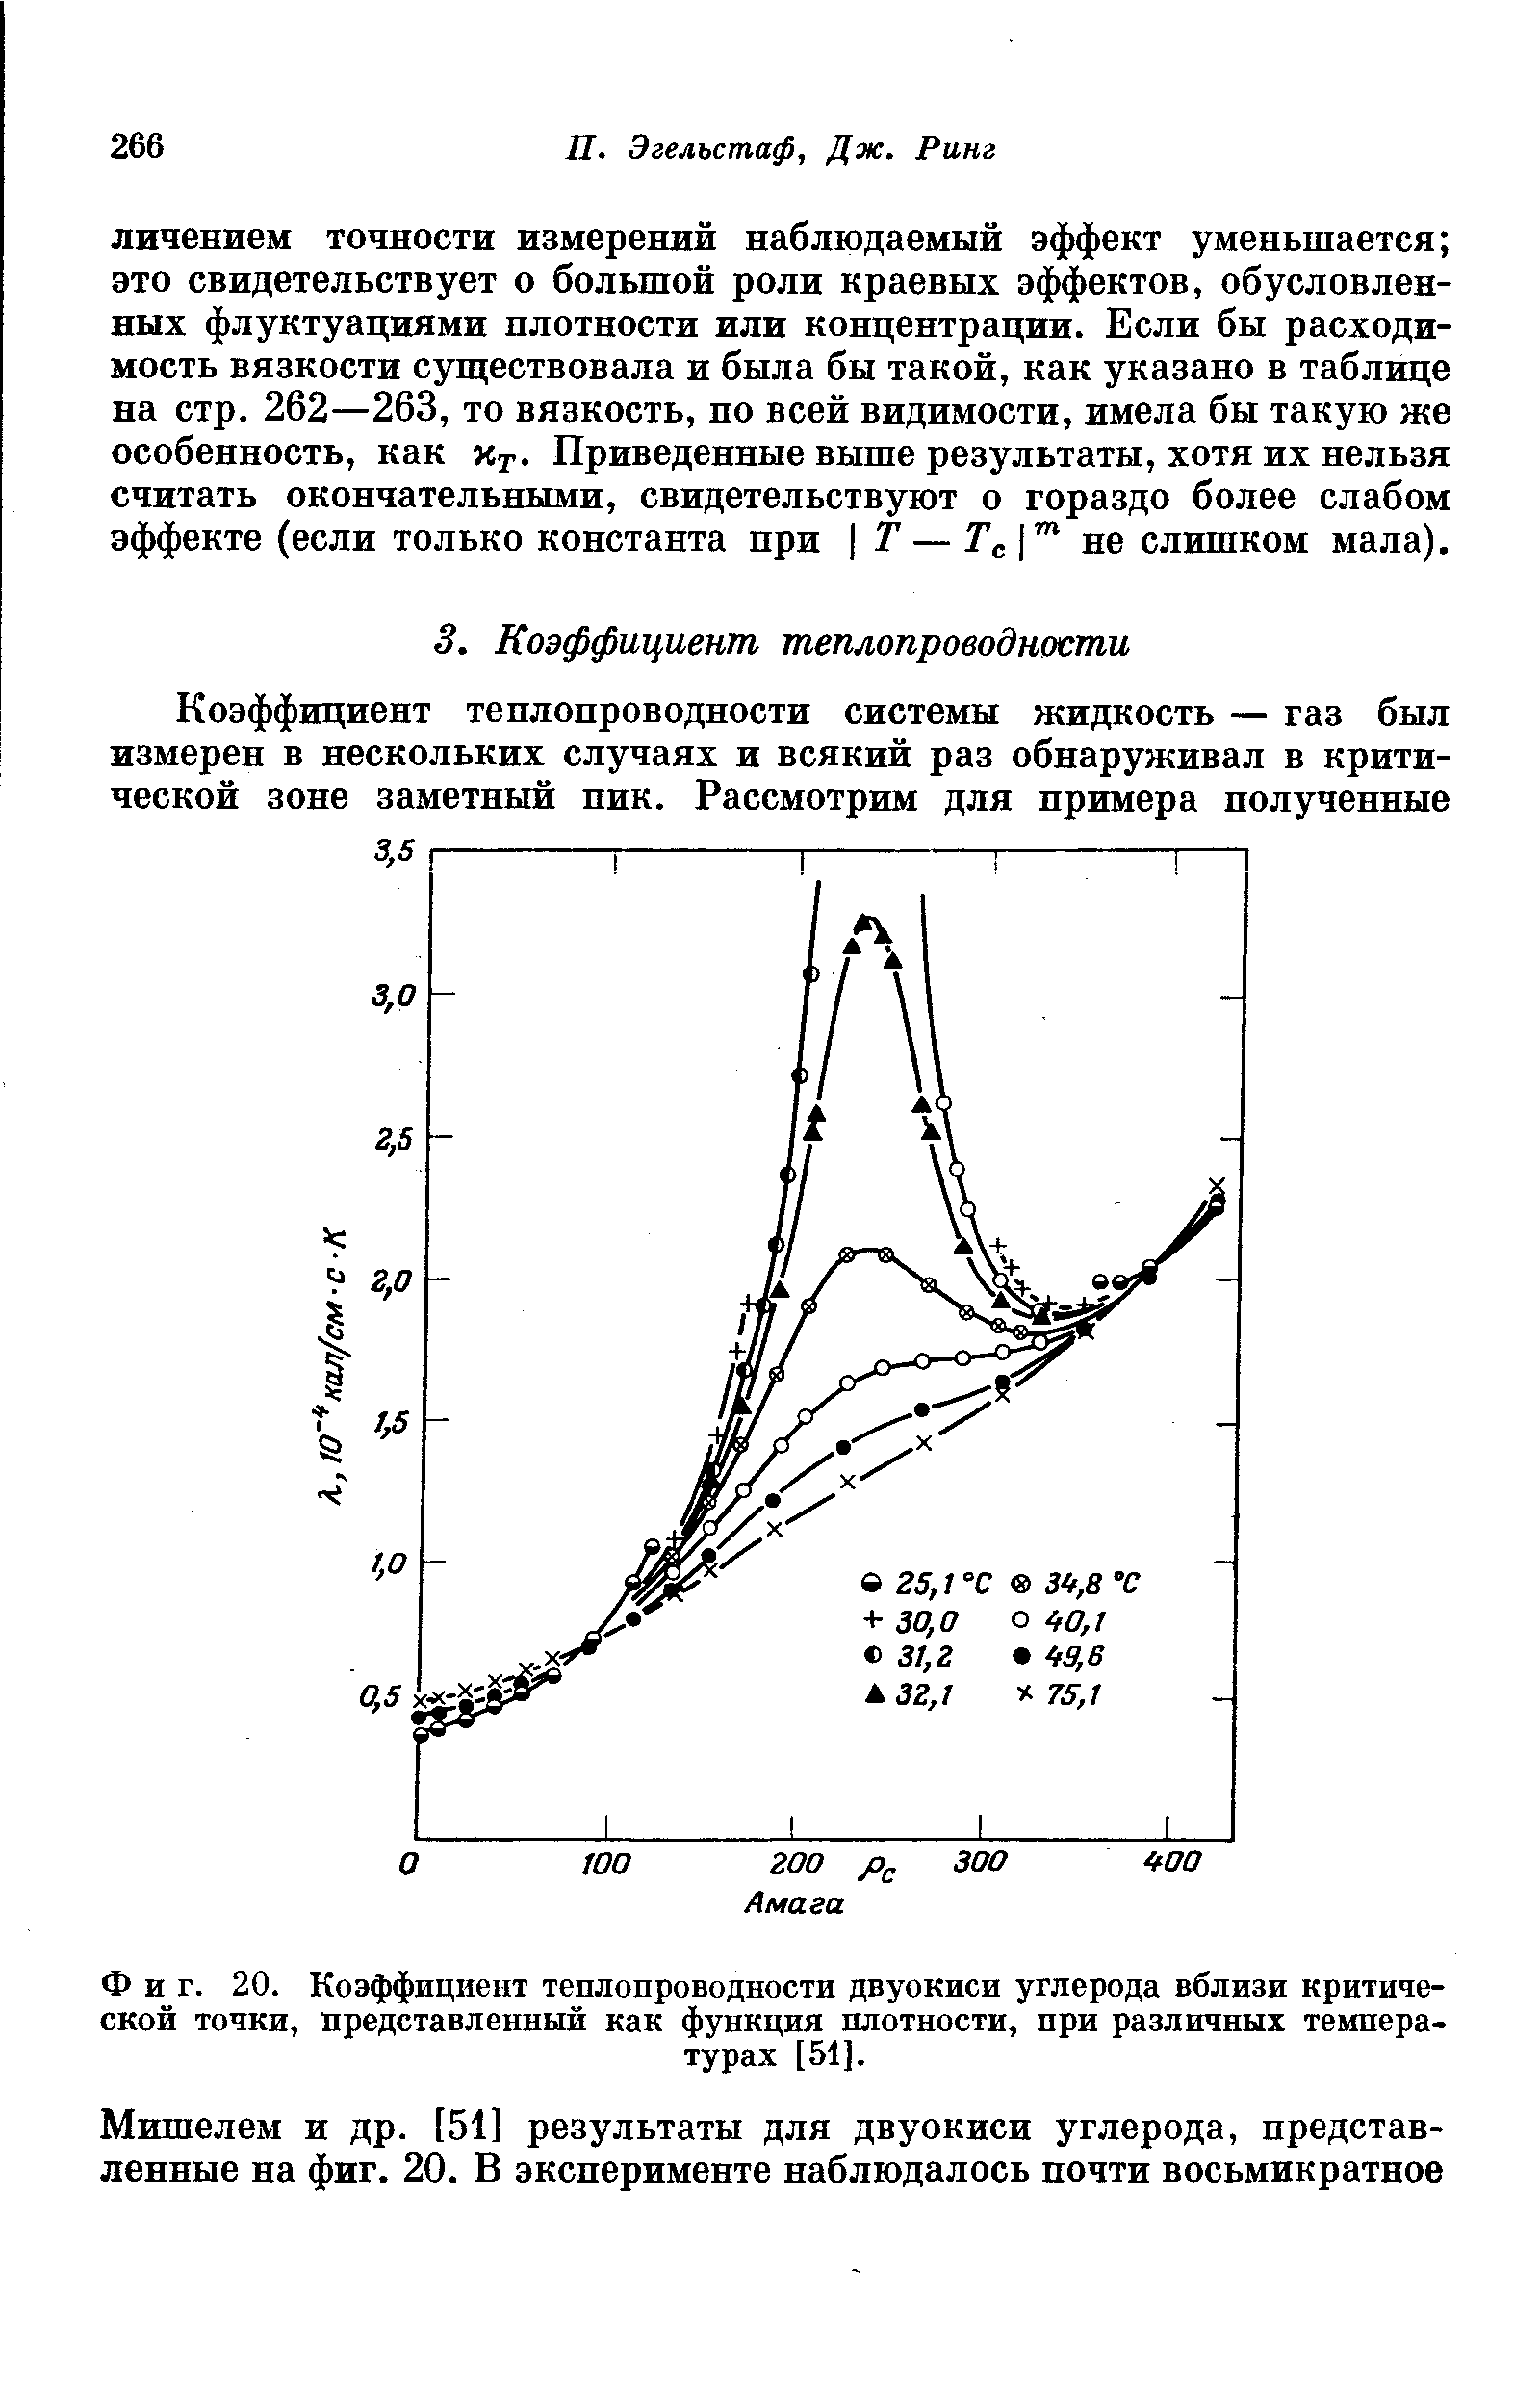 Фиг. 20. <a href="/info/790">Коэффициент теплопроводности</a> двуокиси углерода вблизи <a href="/info/21132">критической точки</a>, представленный как функция плотности, при различных температурах [51].
